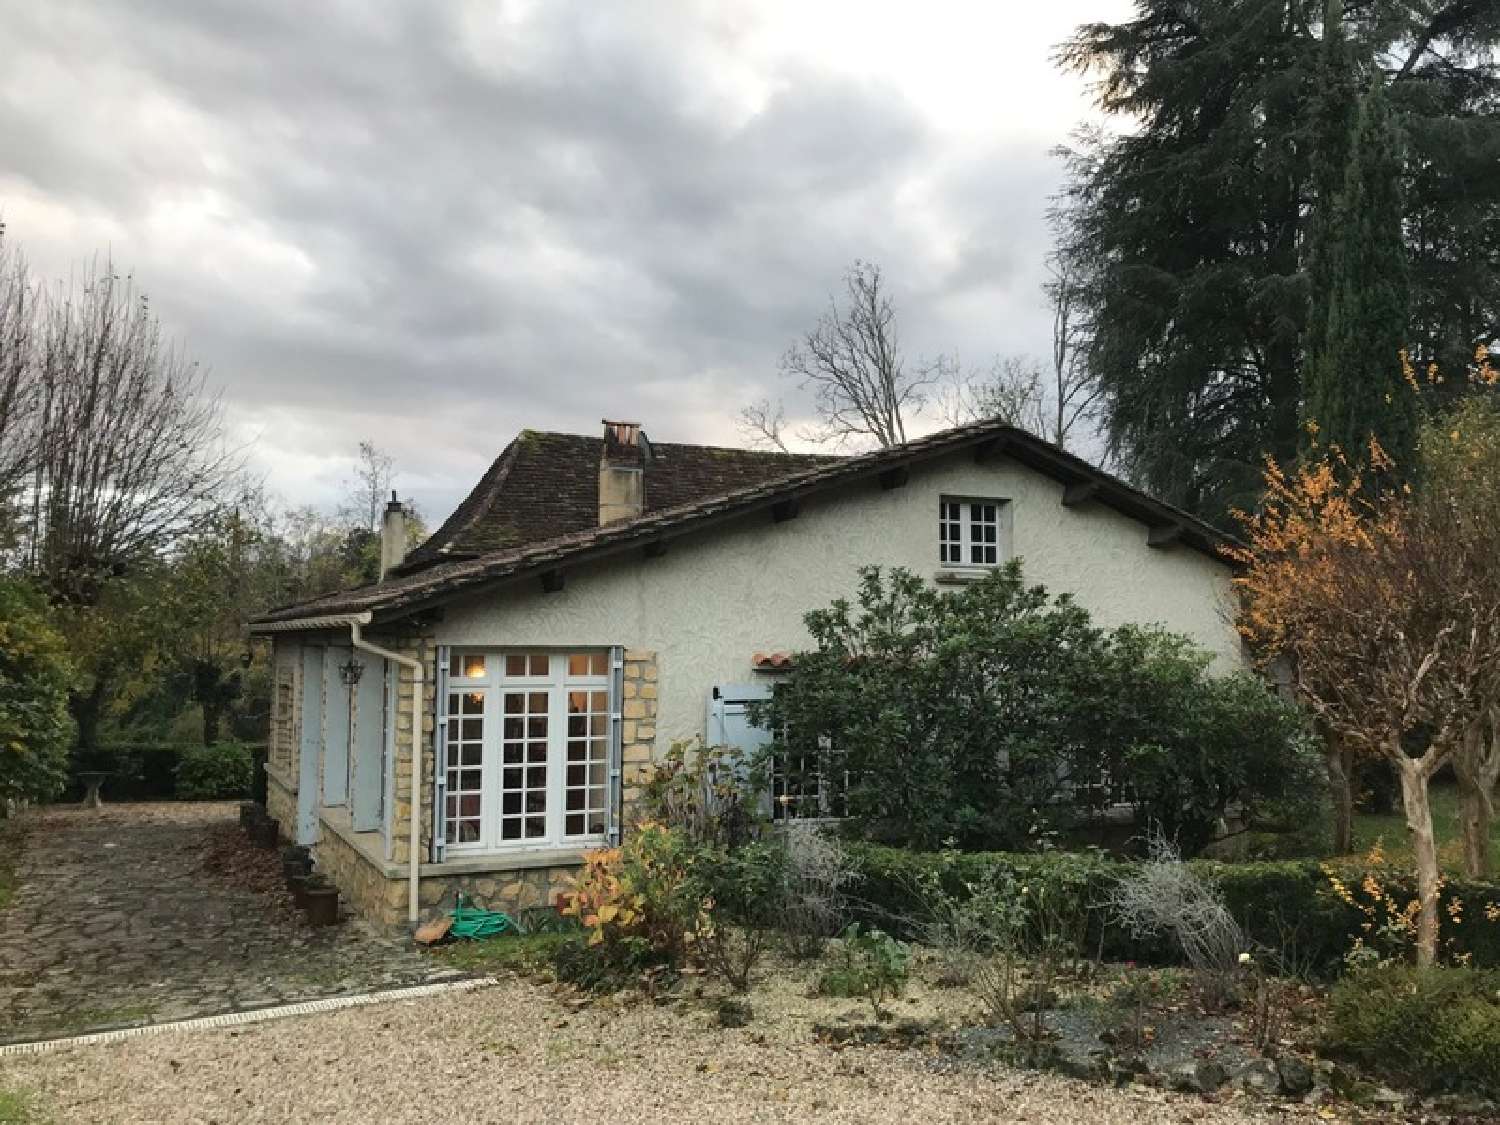  à vendre maison Creysse Dordogne 4